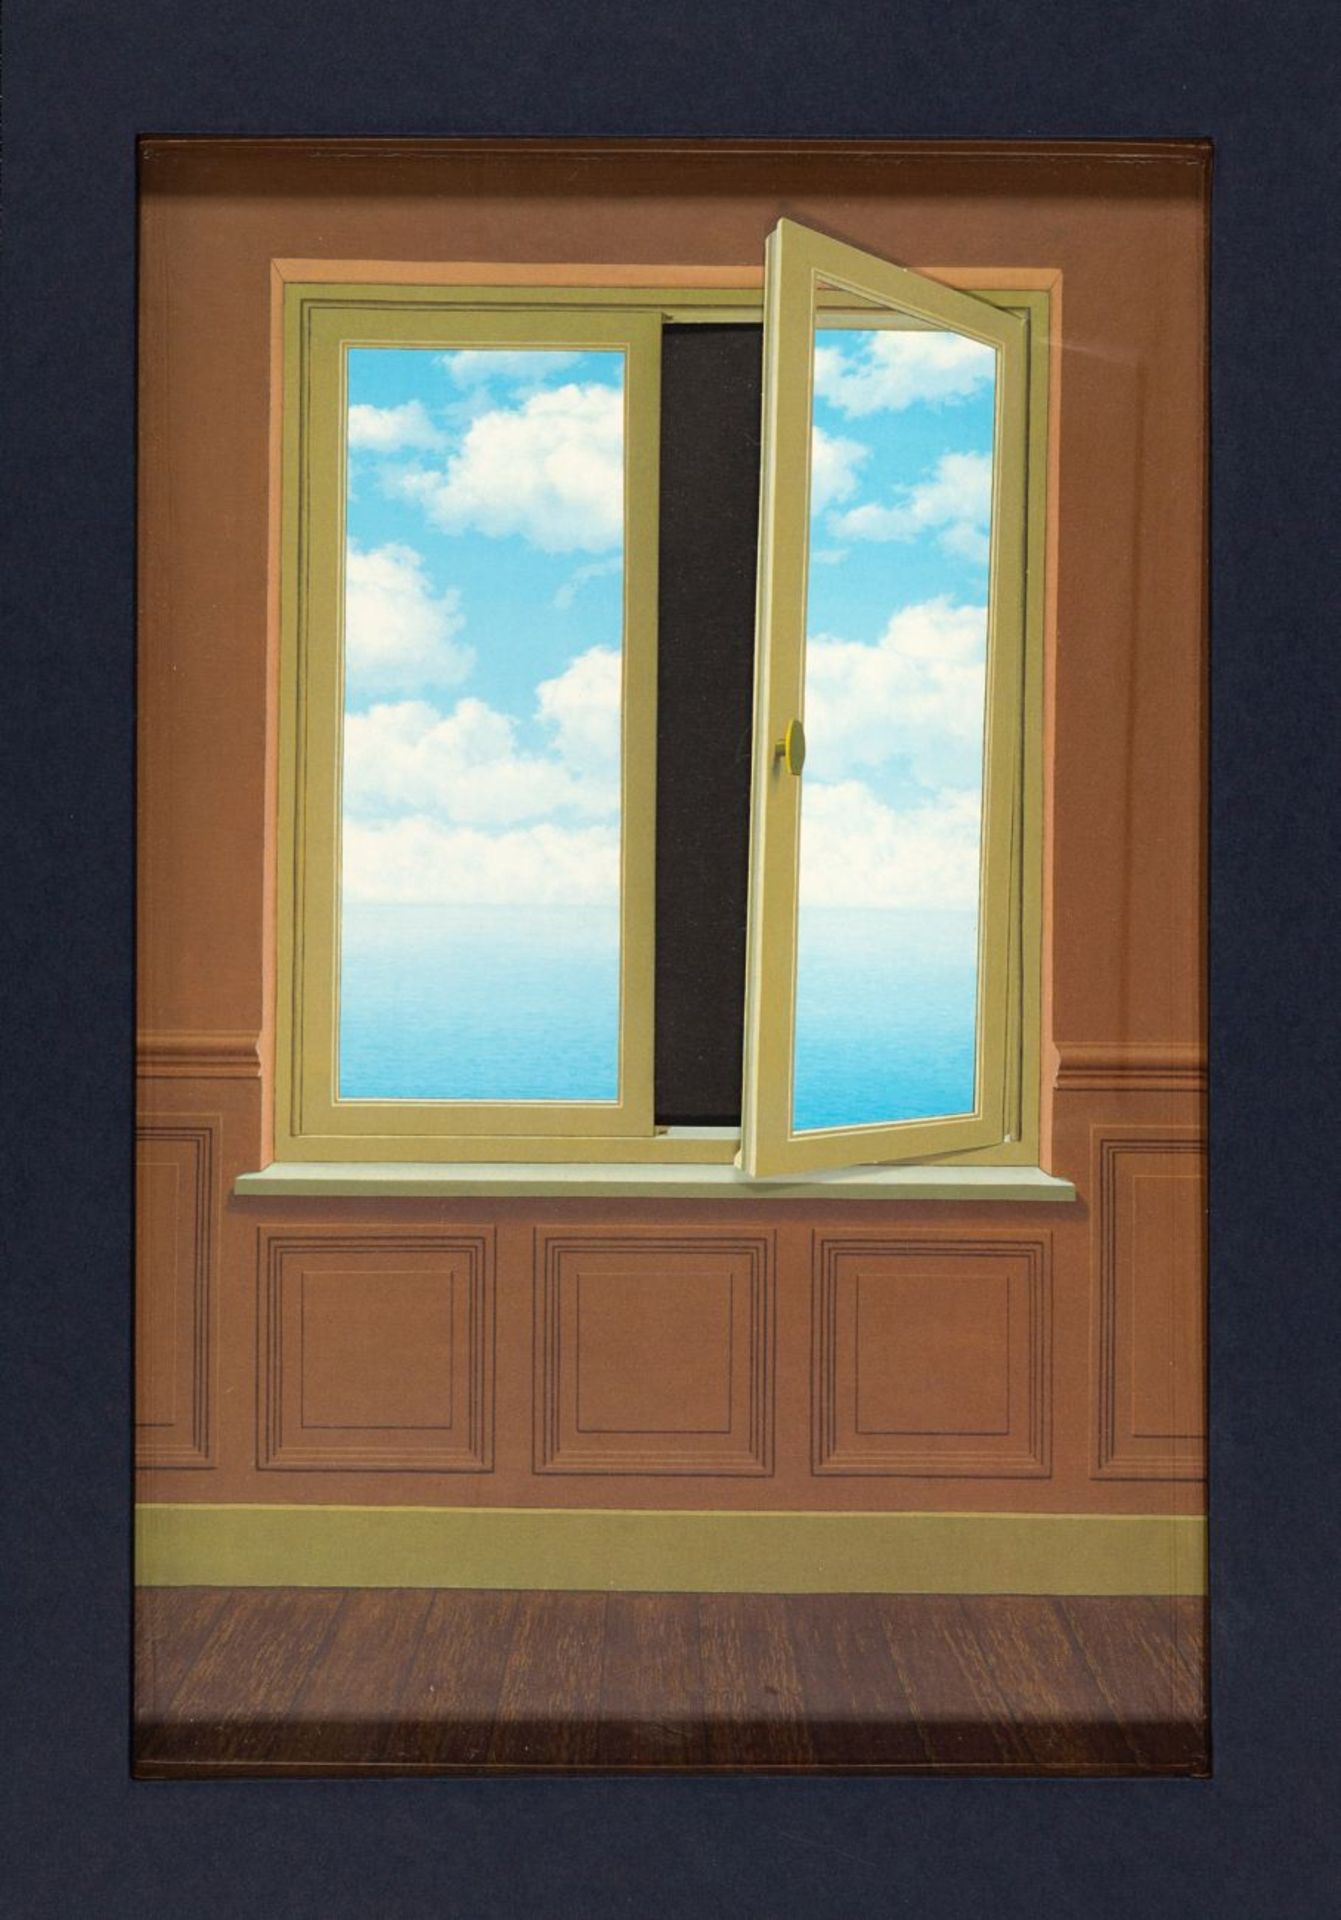 R. Magritte, Blue Box. Deluxe-Ausgabe. Katalog mit Beigaben in OrKassette. Paris 2003. - Ex. 492/950